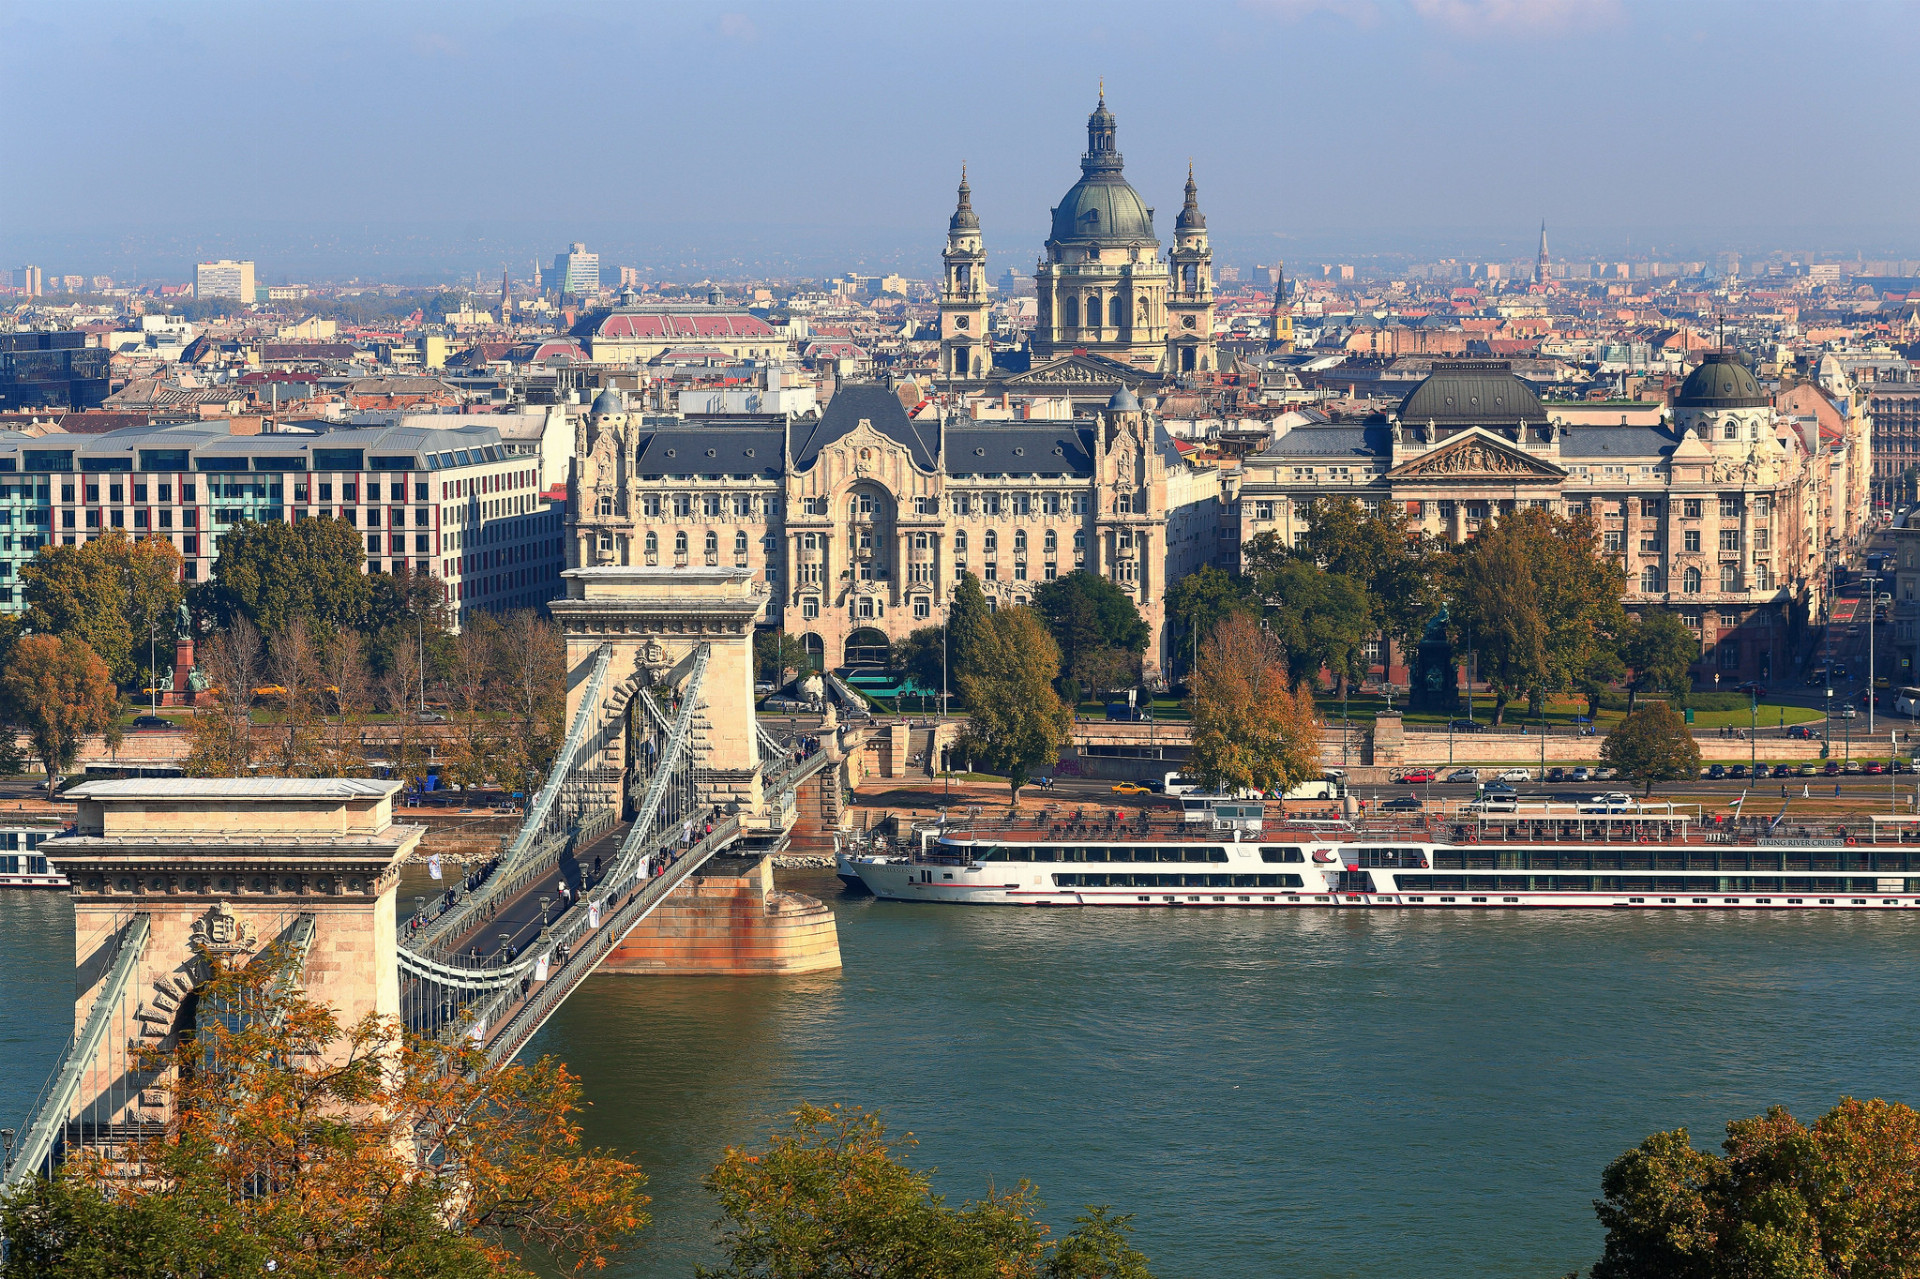 Poďme späť do Európy. Susedná Budapešť je známa svojou veľkolepou historickou architektúrou a slávnymi termálnymi kúpeľmi. Krajina očarí aj malebnými dedinkami. Teplé vody Balatonu sú len hodinu cesty od hlavného mesta.